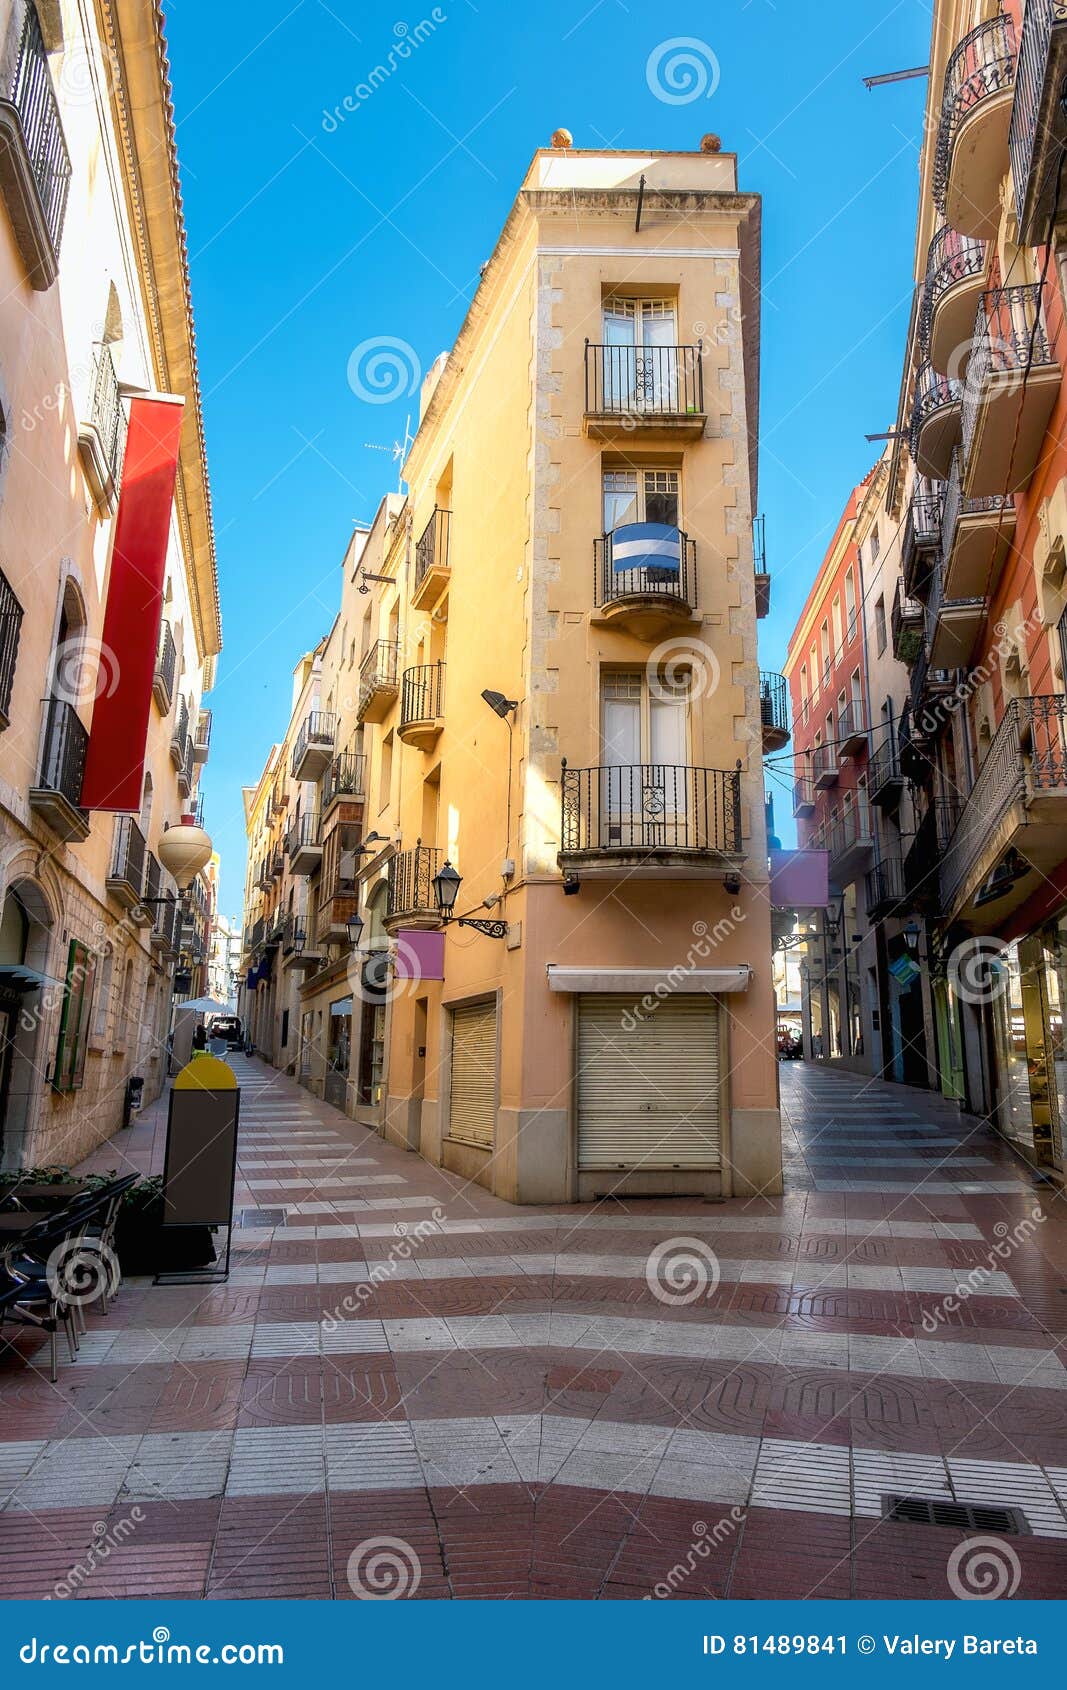 Figueres-Stra?e, Katalonien, Spanien Redaktionelles Foto - Bild von europa,  gepflastert: 81489841